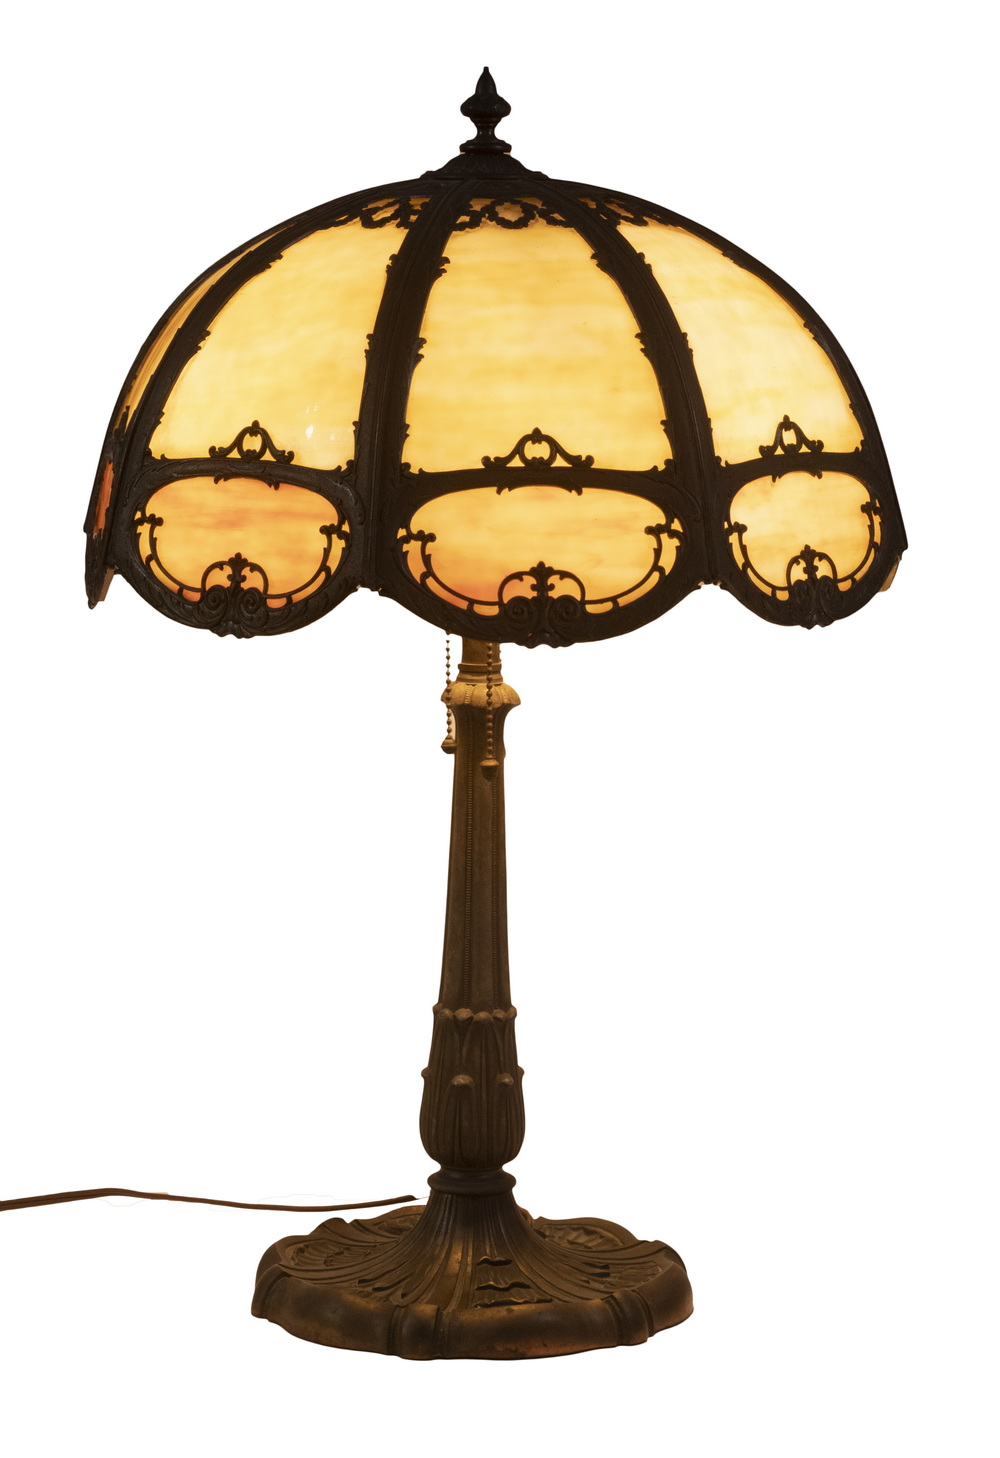 SLAG GLASS PANEL LAMP Ca 1920s 302d44